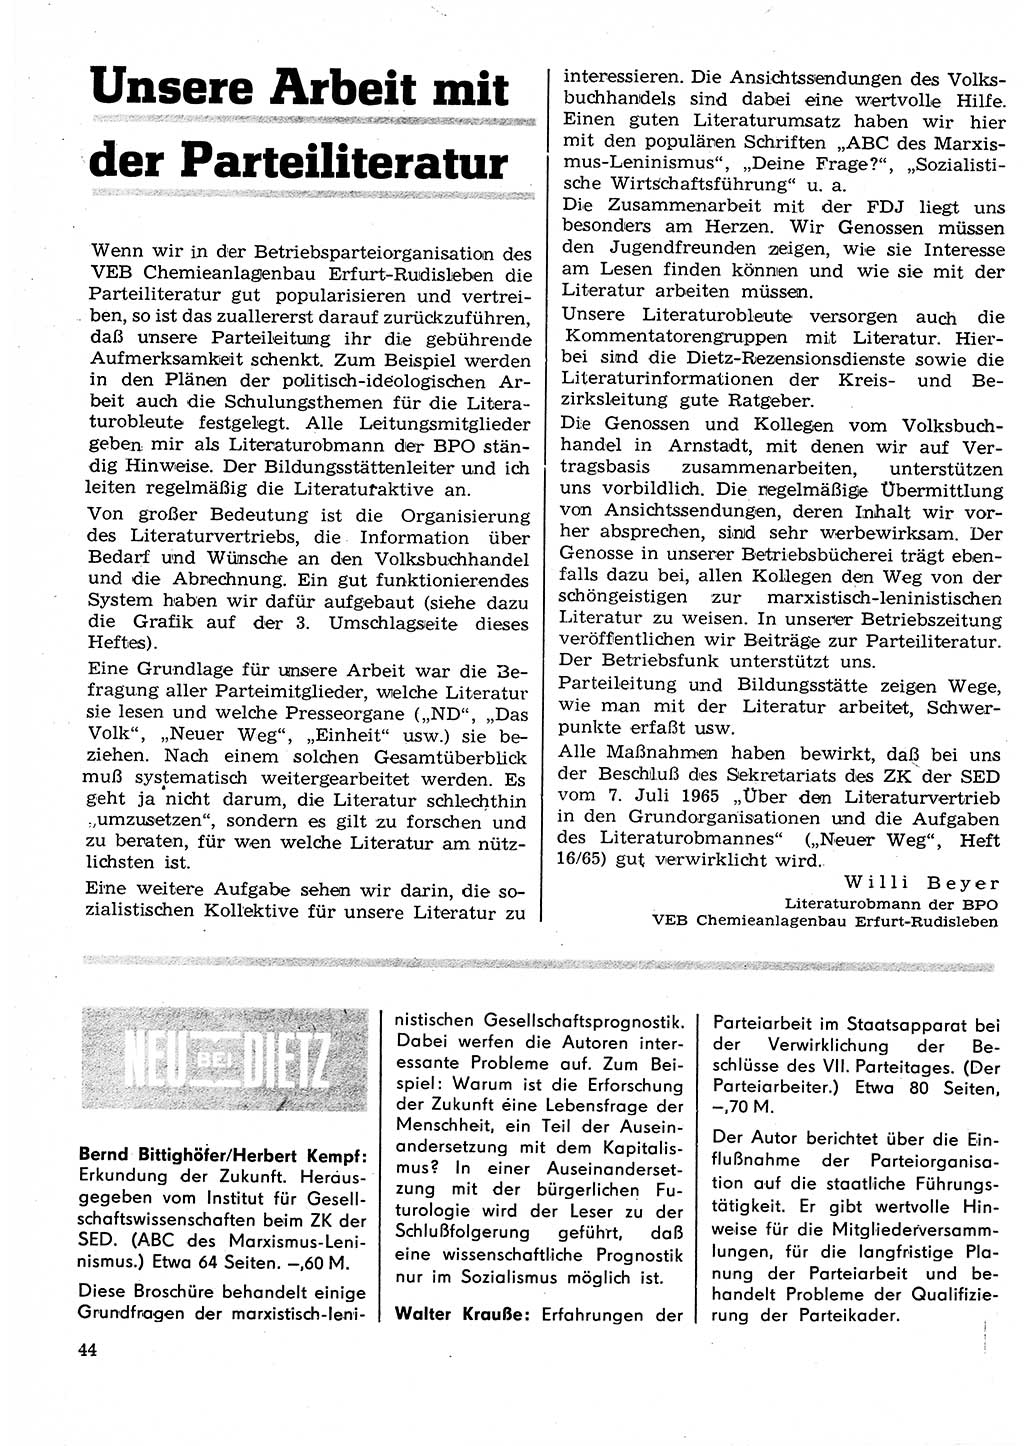 Neuer Weg (NW), Organ des Zentralkomitees (ZK) der SED (Sozialistische Einheitspartei Deutschlands) für Fragen des Parteilebens, 25. Jahrgang [Deutsche Demokratische Republik (DDR)] 1970, Seite 44 (NW ZK SED DDR 1970, S. 44)